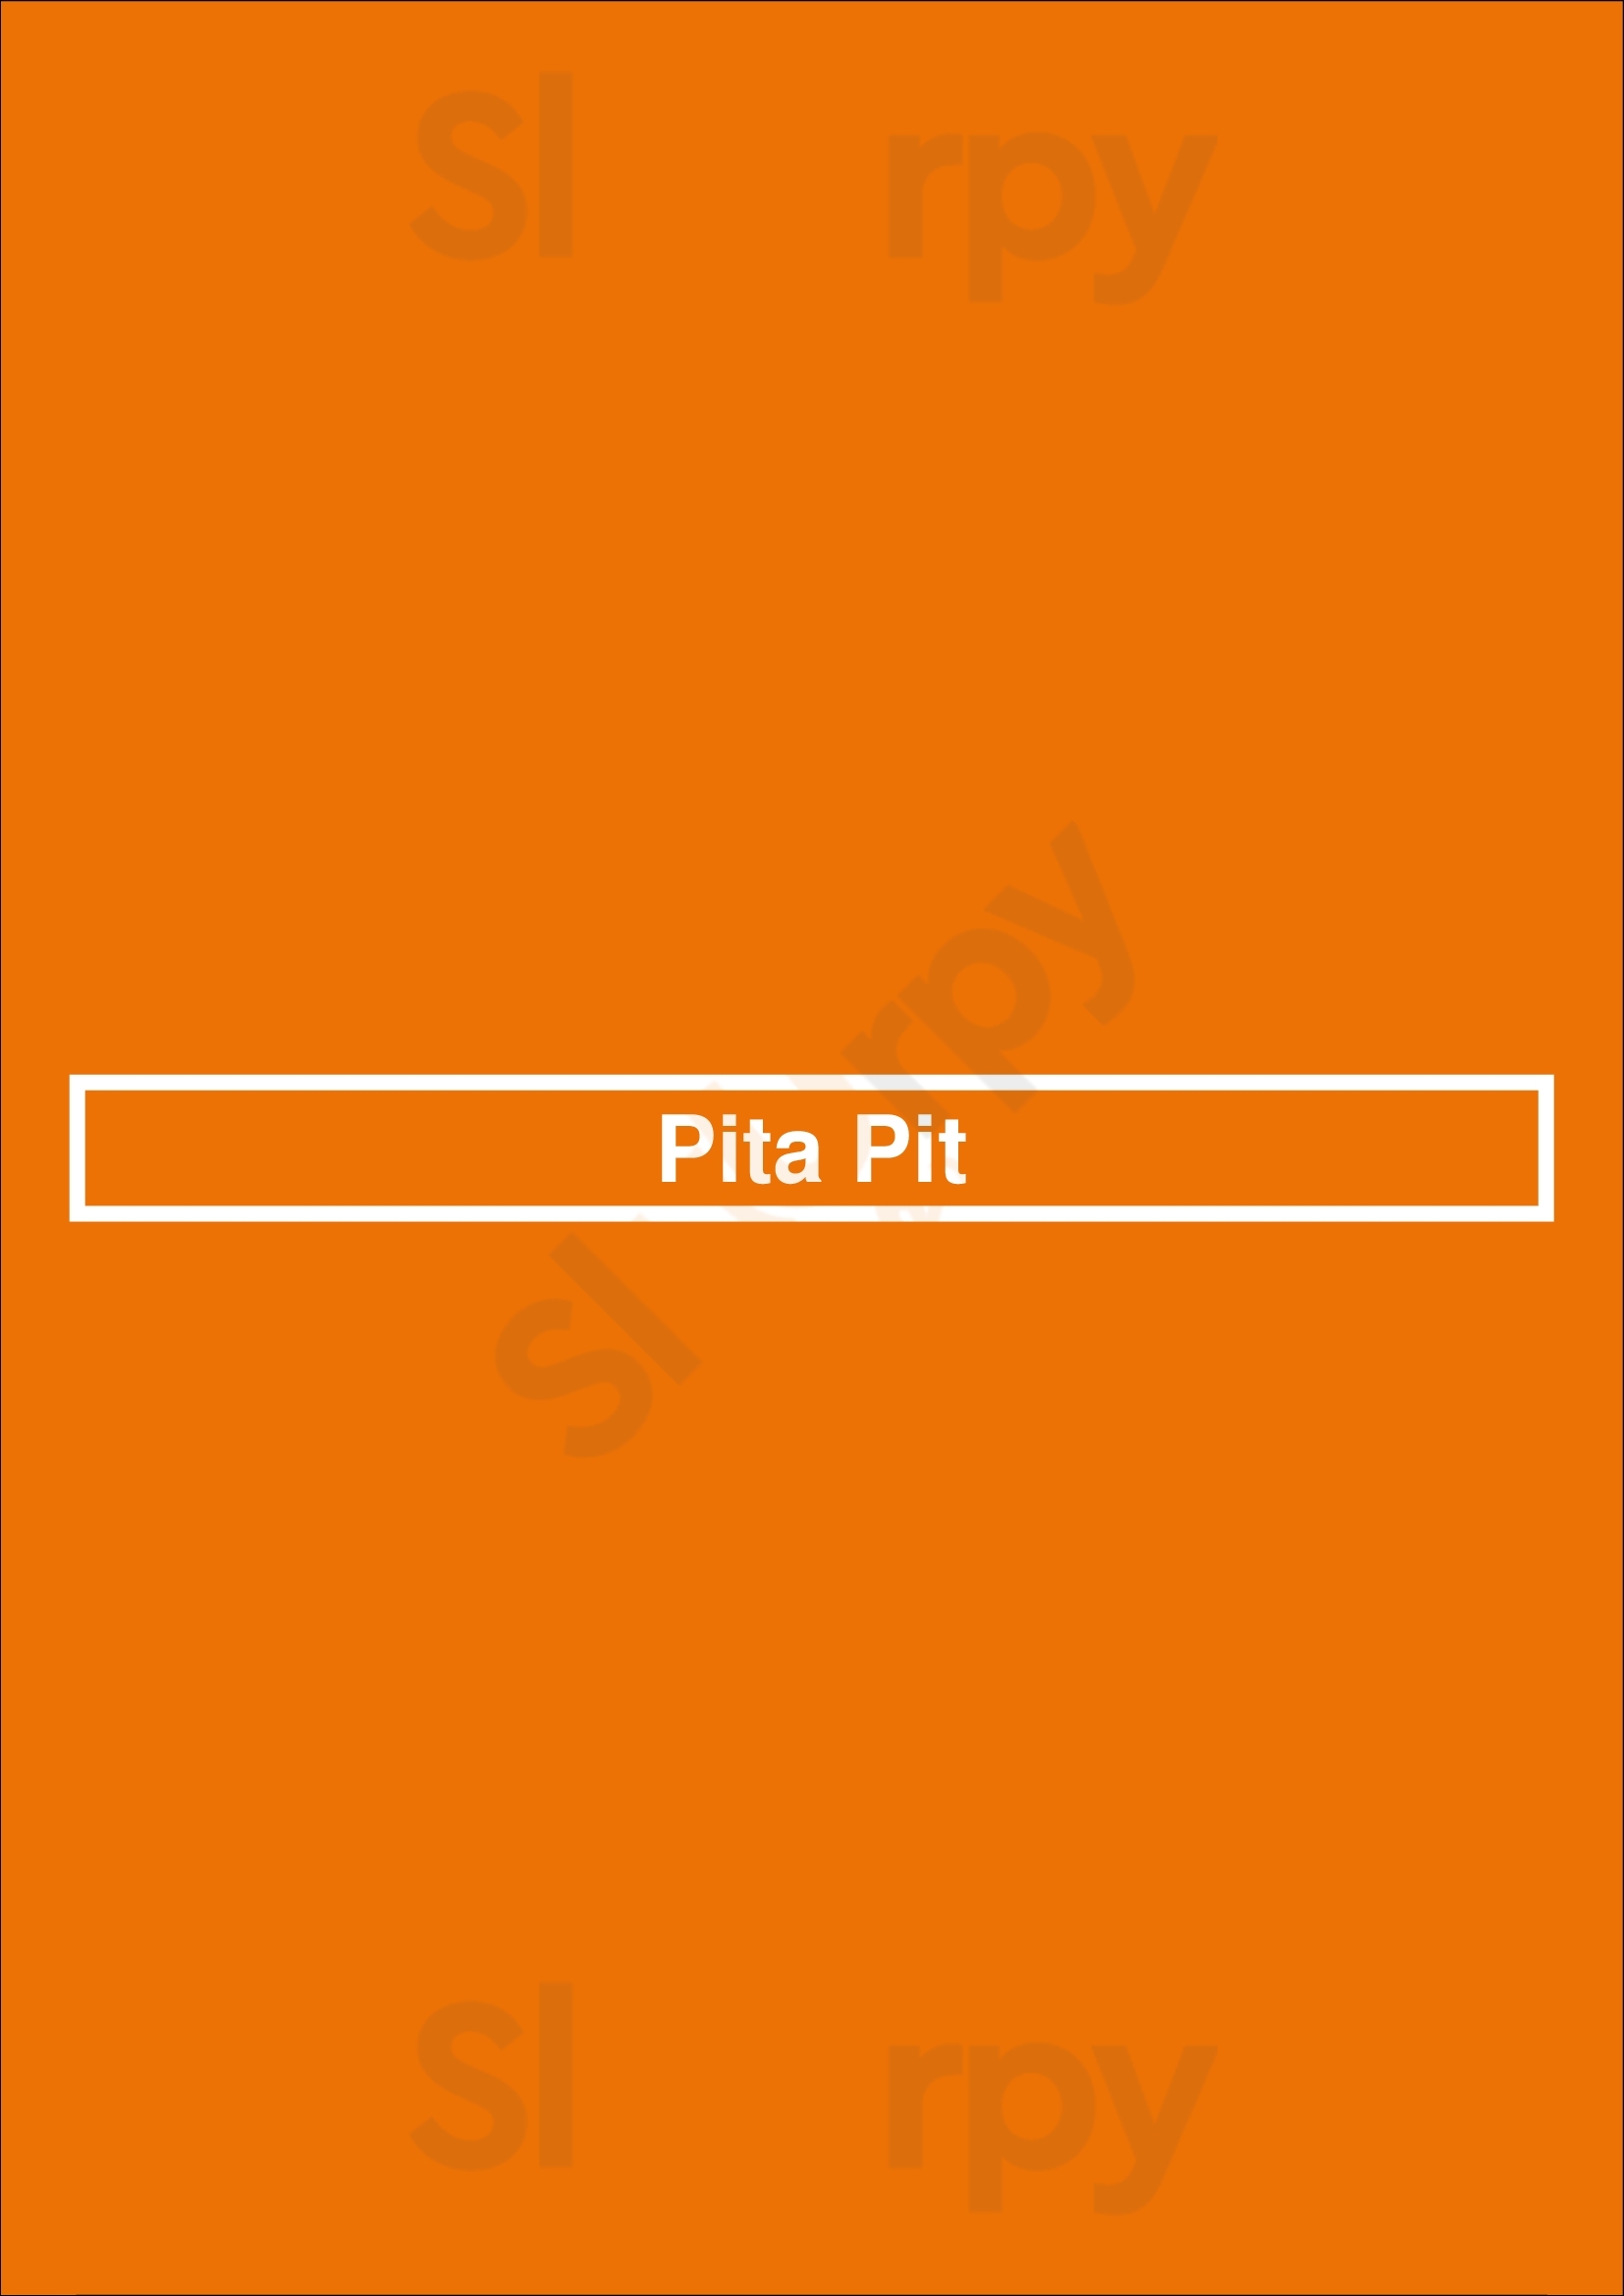 Pita Pit Waterloo Menu - 1